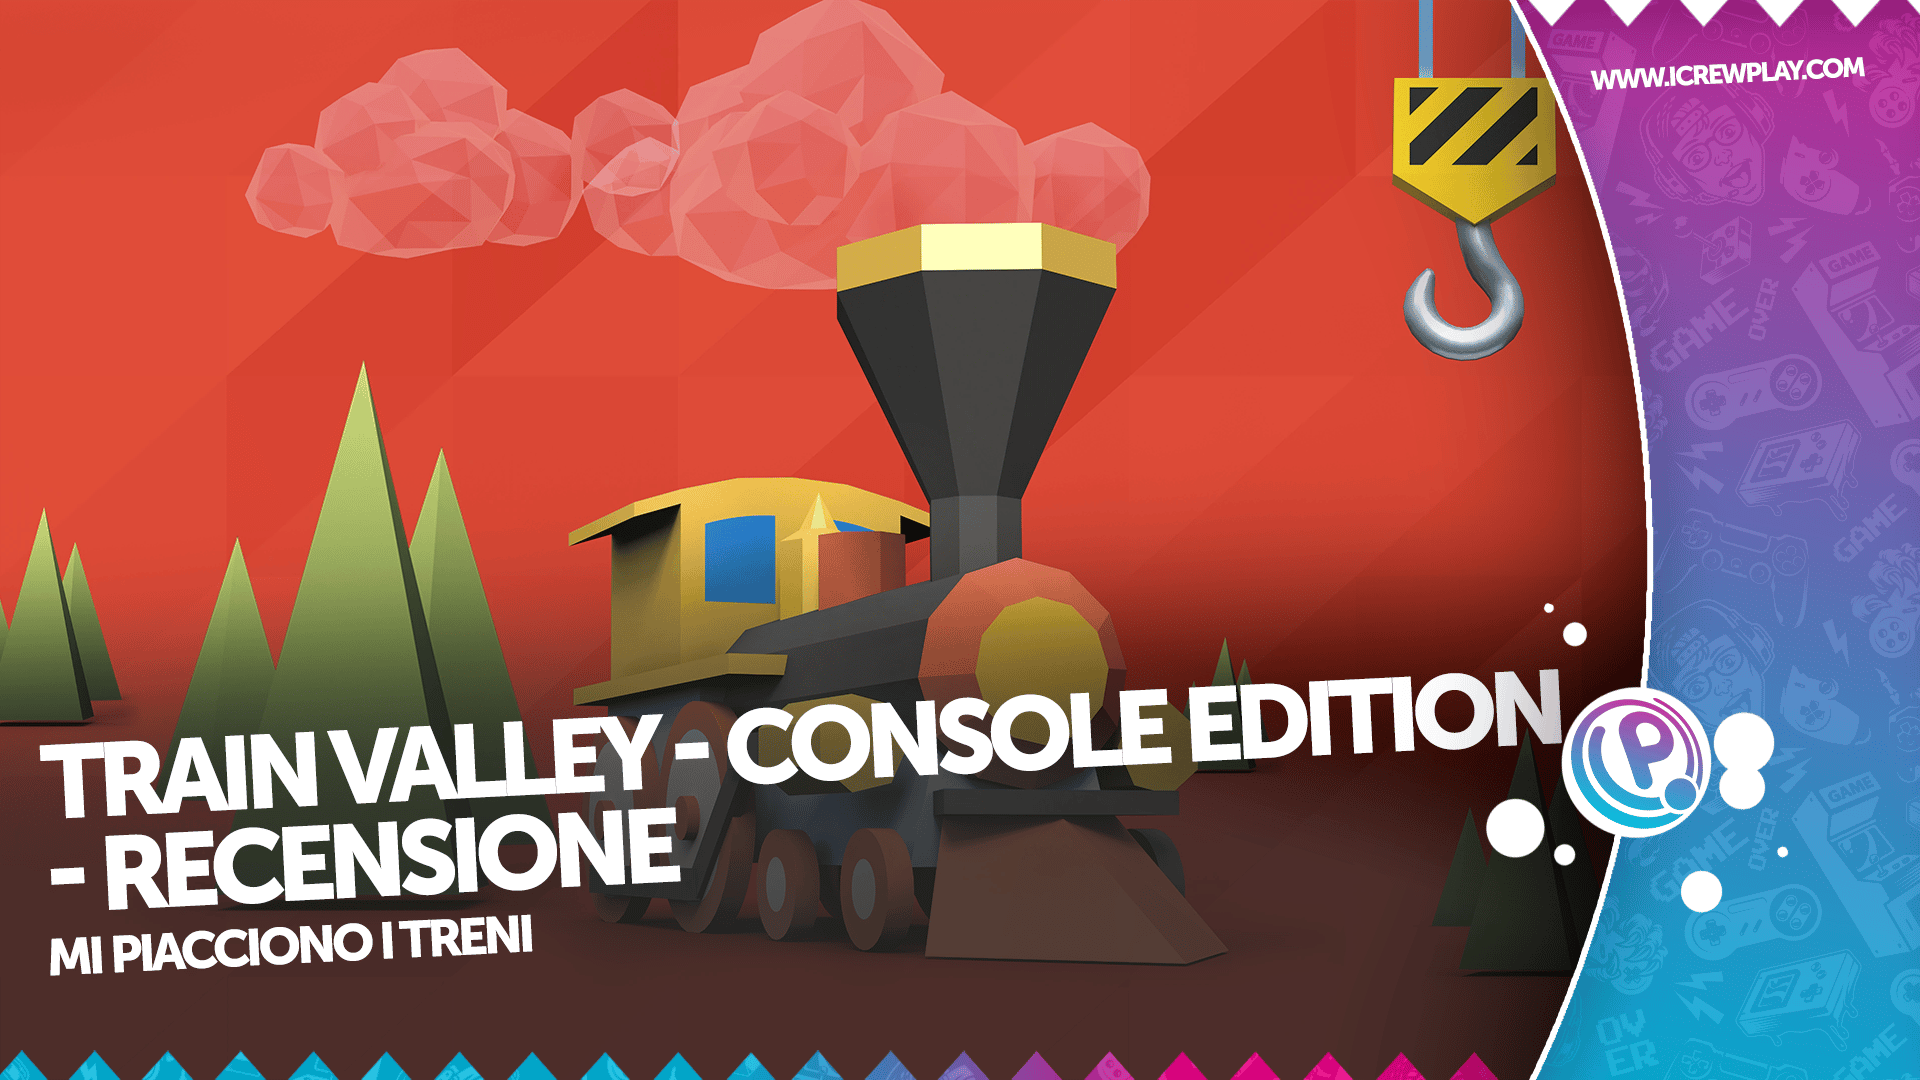 Train Valley: Console Edition - Recensione per Nintendo Switch 14